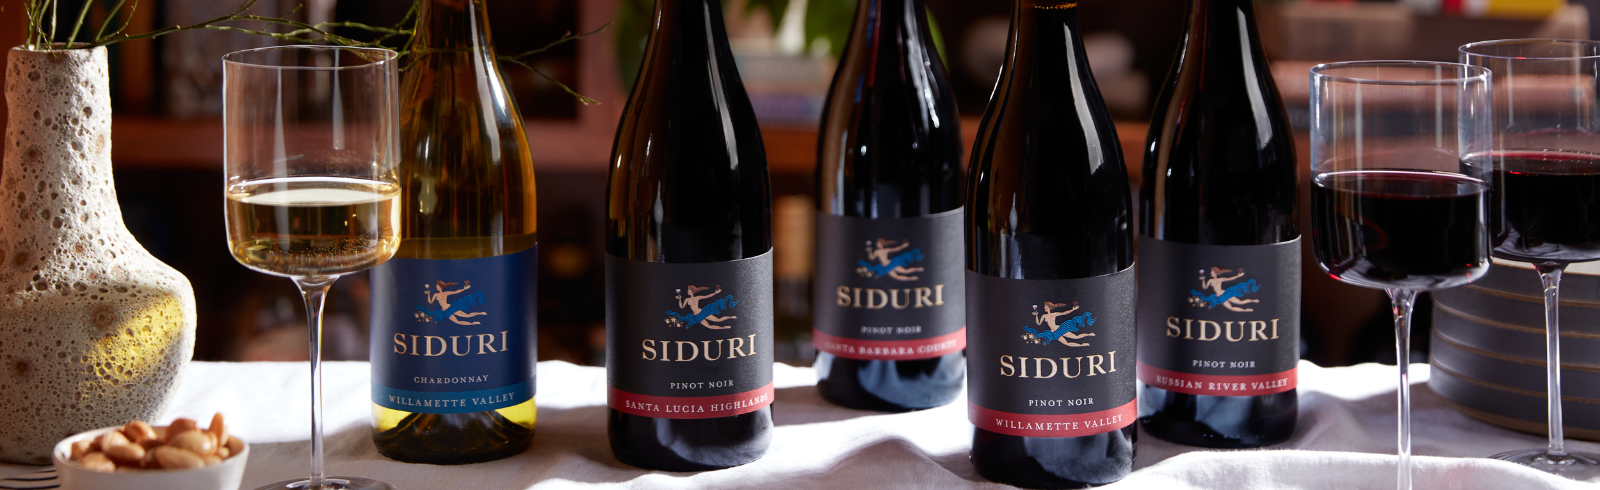 SIDURI WINES